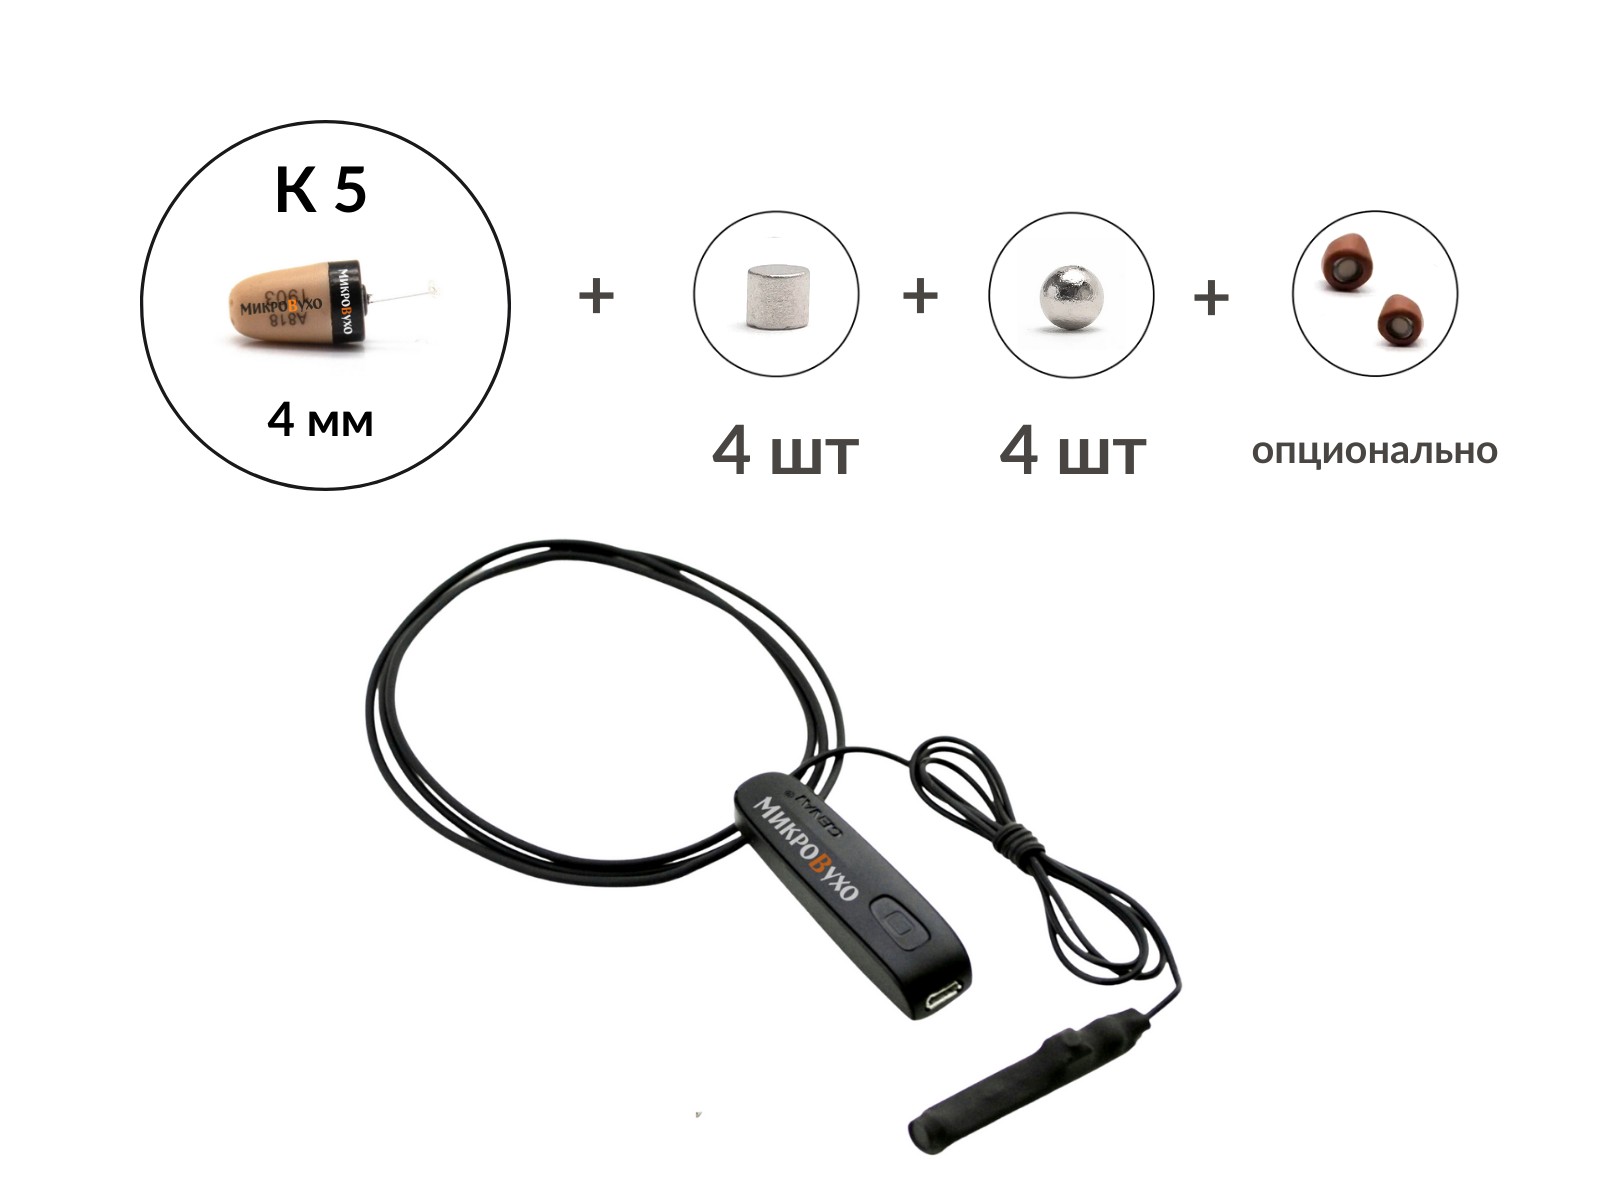 Bluetooth Basic с кнопкой-пищалкой, капсулой  K5 4 мм и магнитами 2 мм - изображение